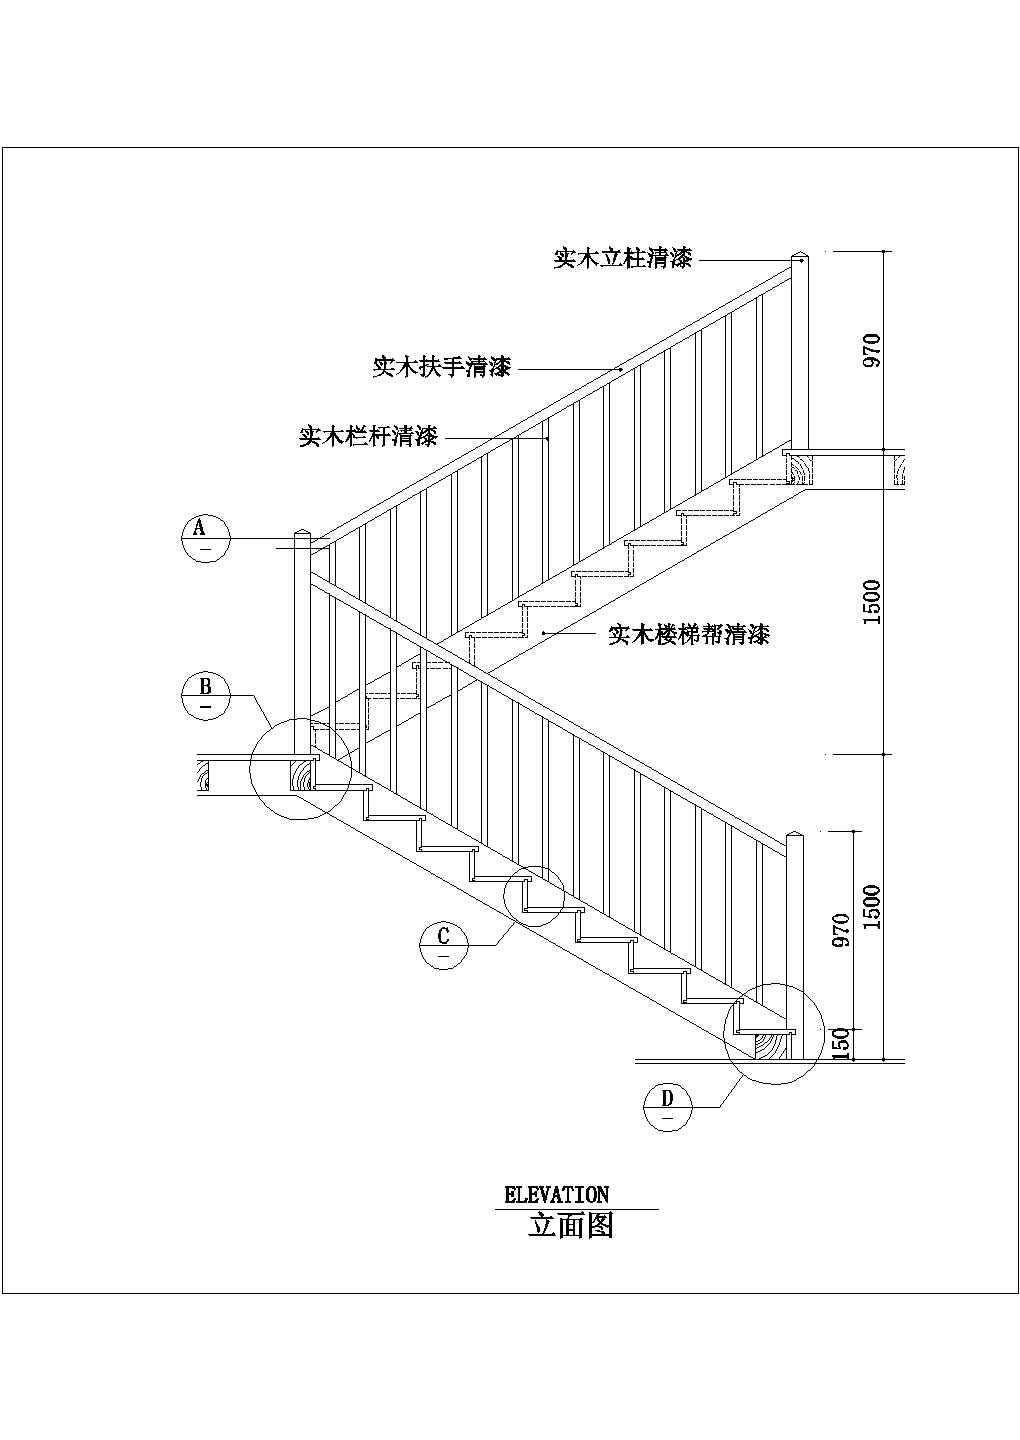 楼梯及扶手、宾馆总台图、钢结构包边包角、钢结构厂房施工图